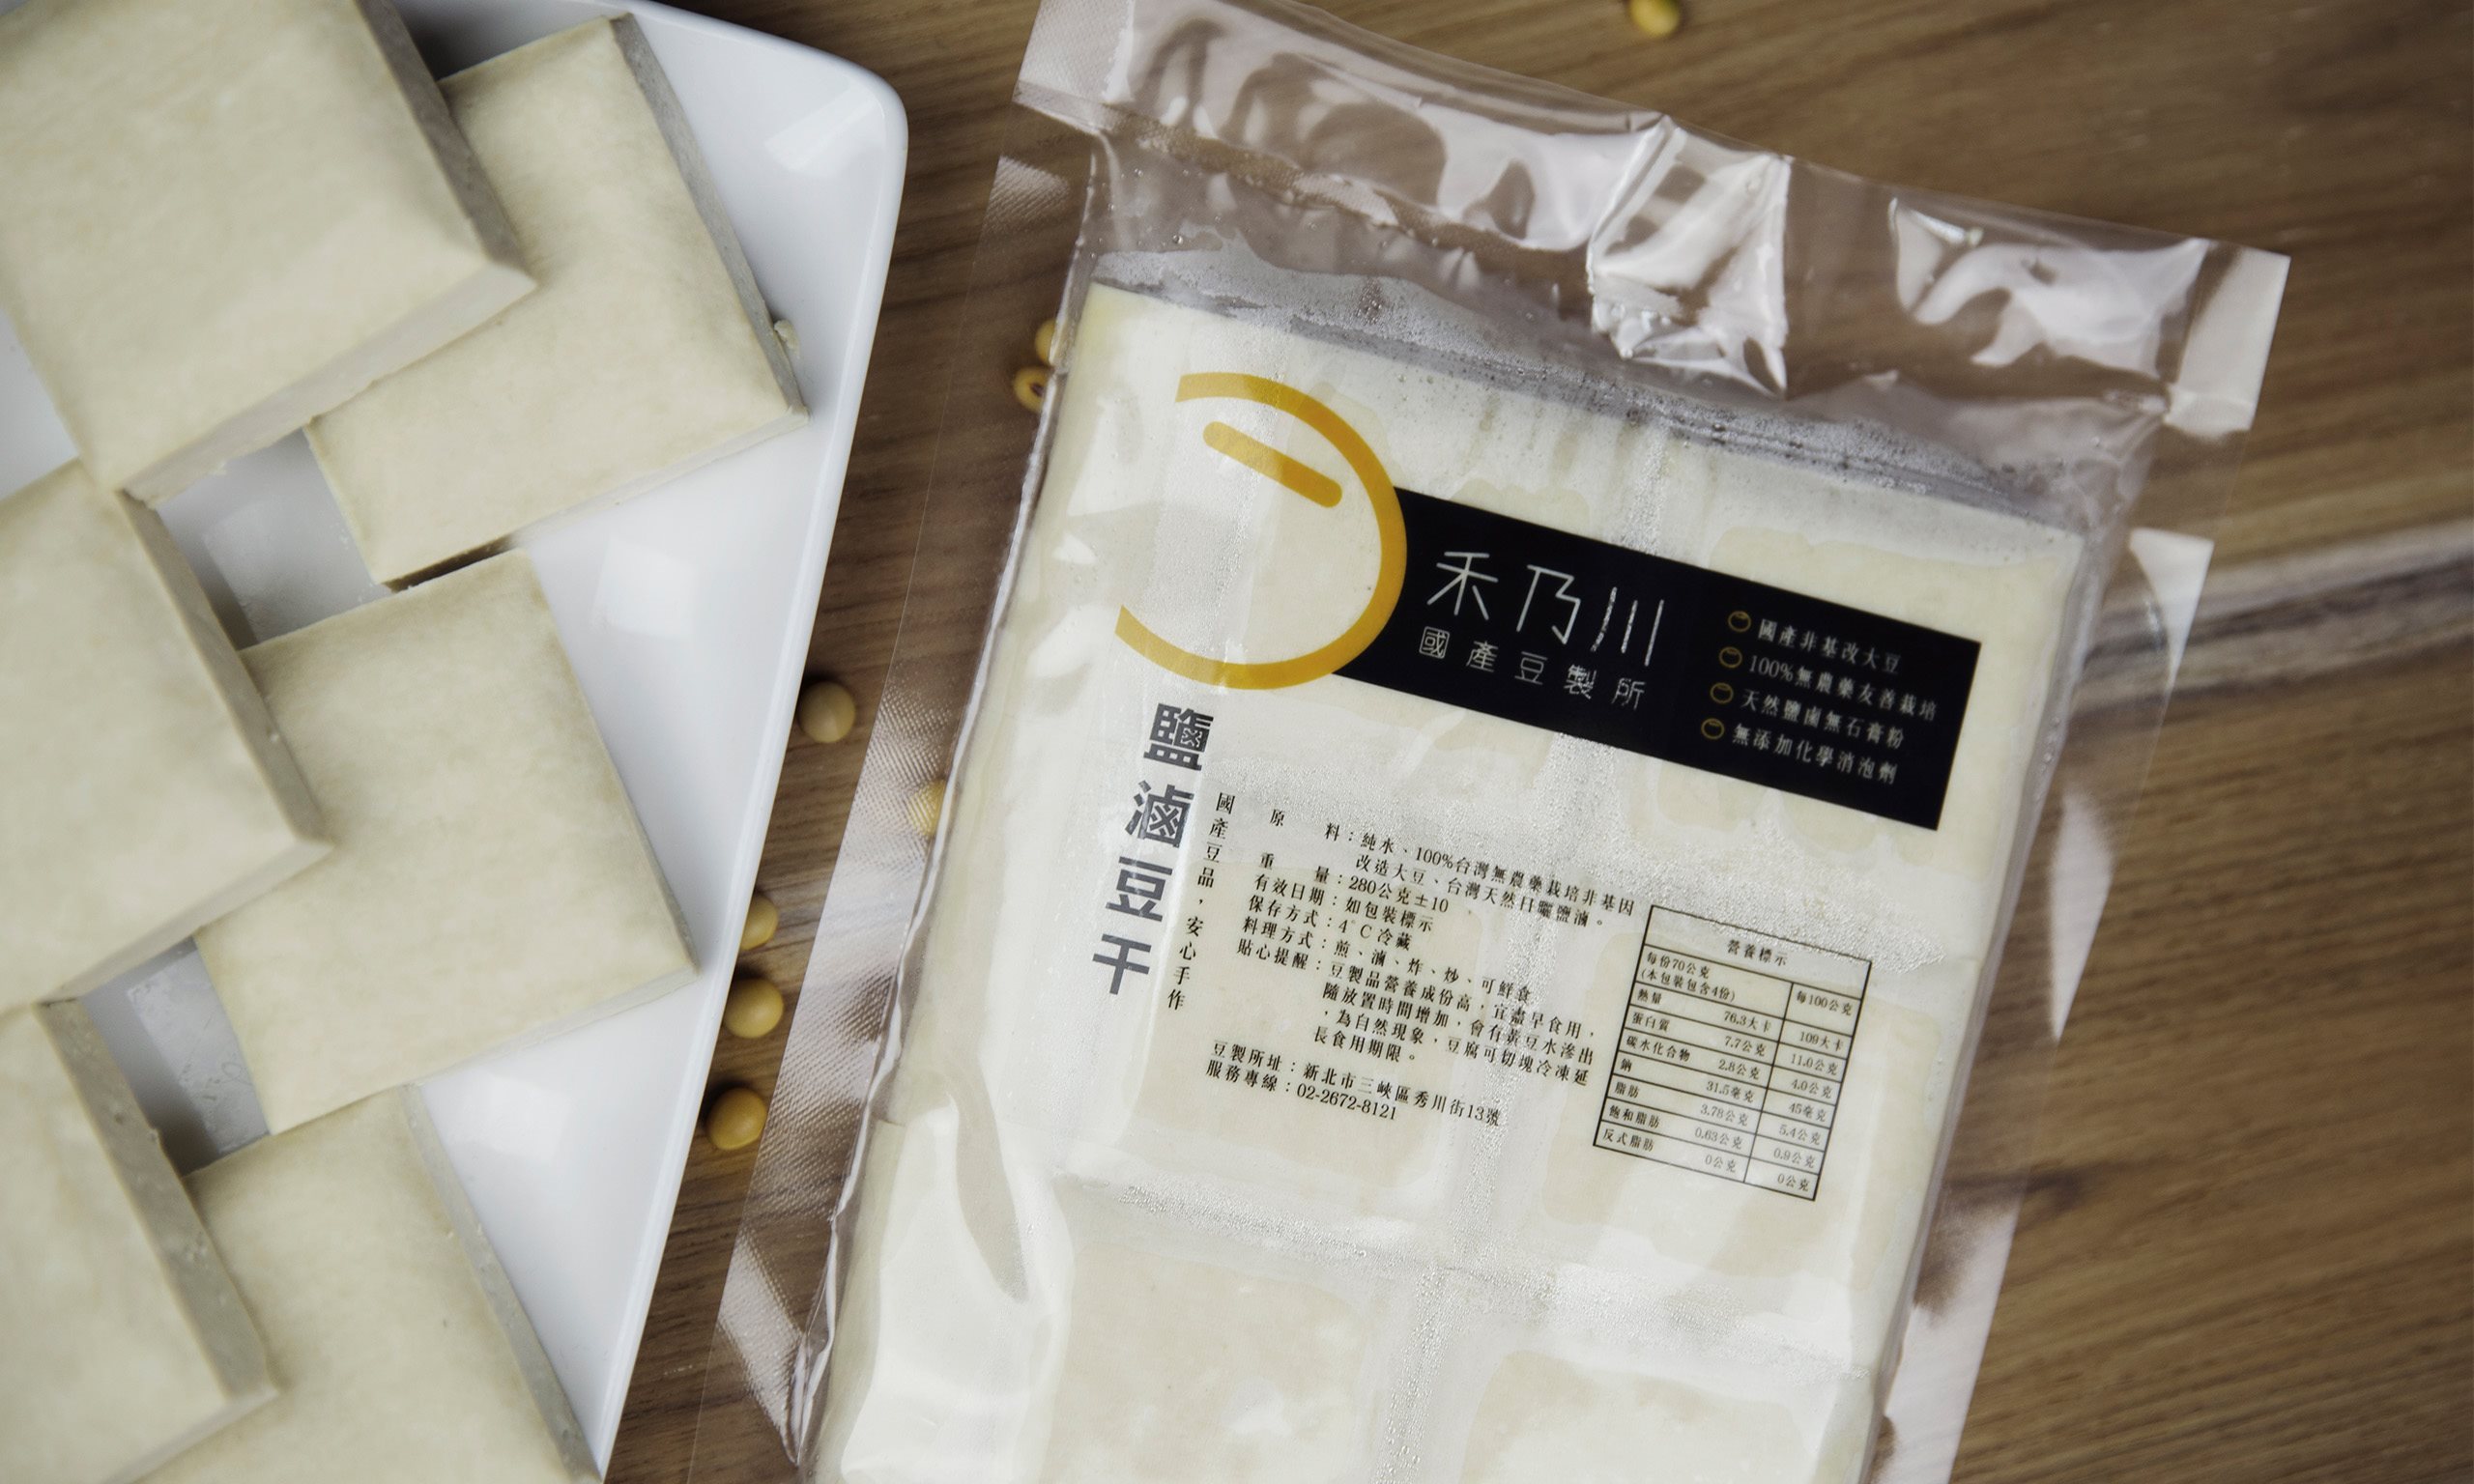 Tofu and Dried Tofu with Bittern - Taiwan domestic non-GMO soy milk shop in Taipei